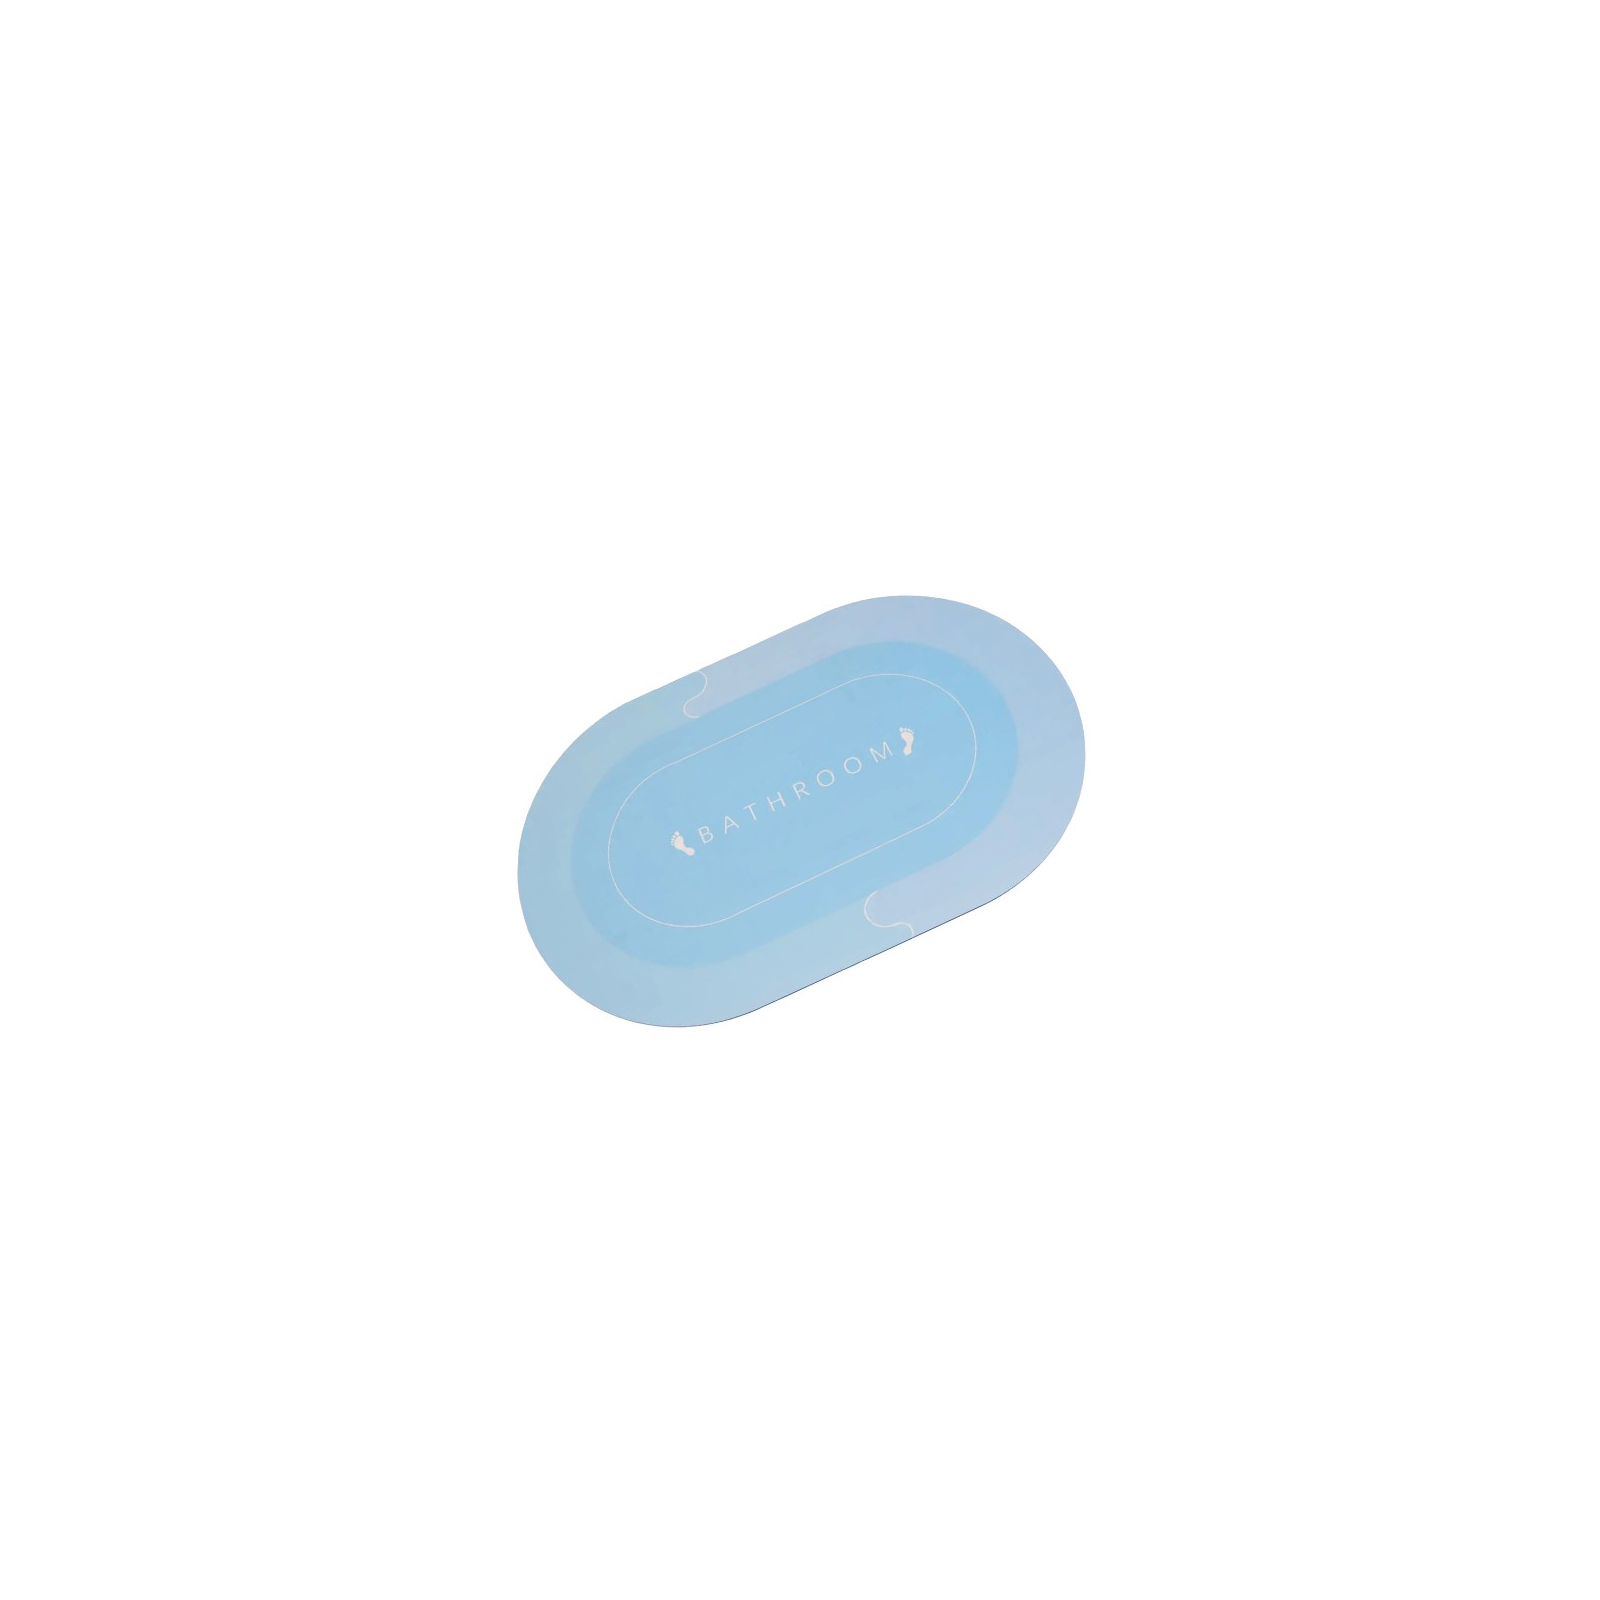 Коврик для ванной Stenson суперпоглощающий 50 х 80 см овальный серо-синий (R30940 grey-blue)